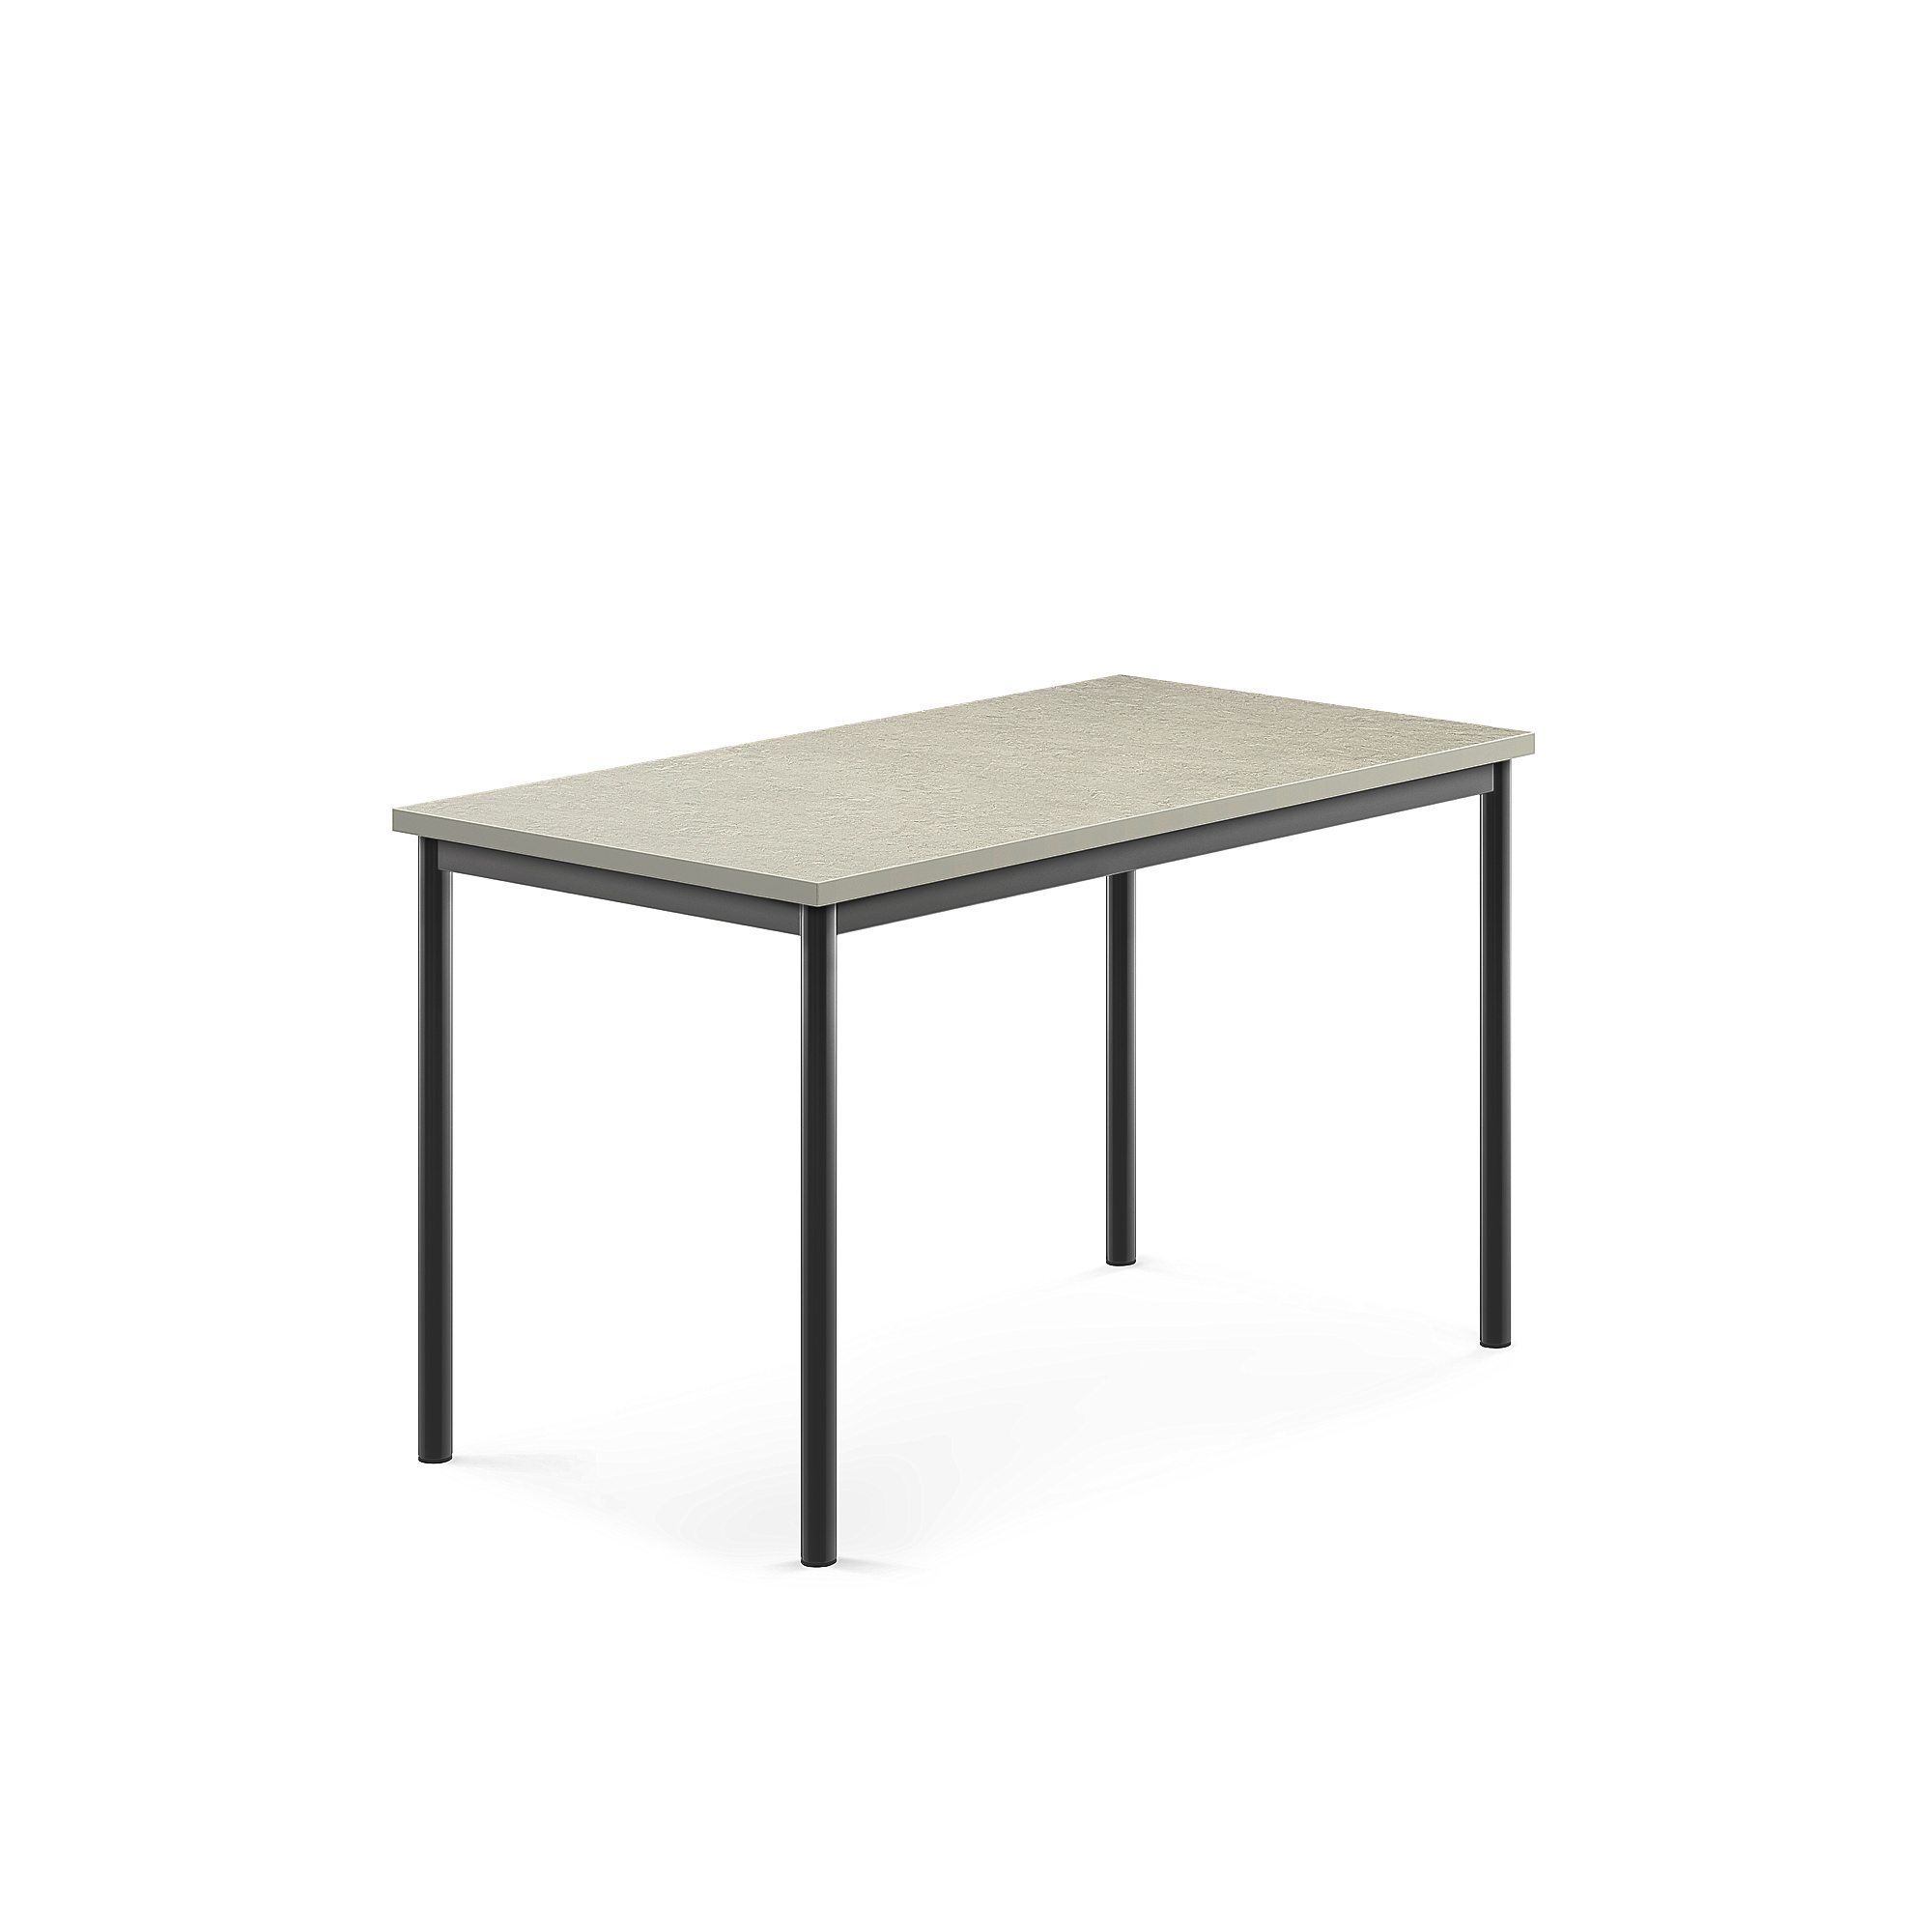 Stůl SONITUS, 1200x700x720 mm, antracitově šedé nohy, deska s linoleem, šedá